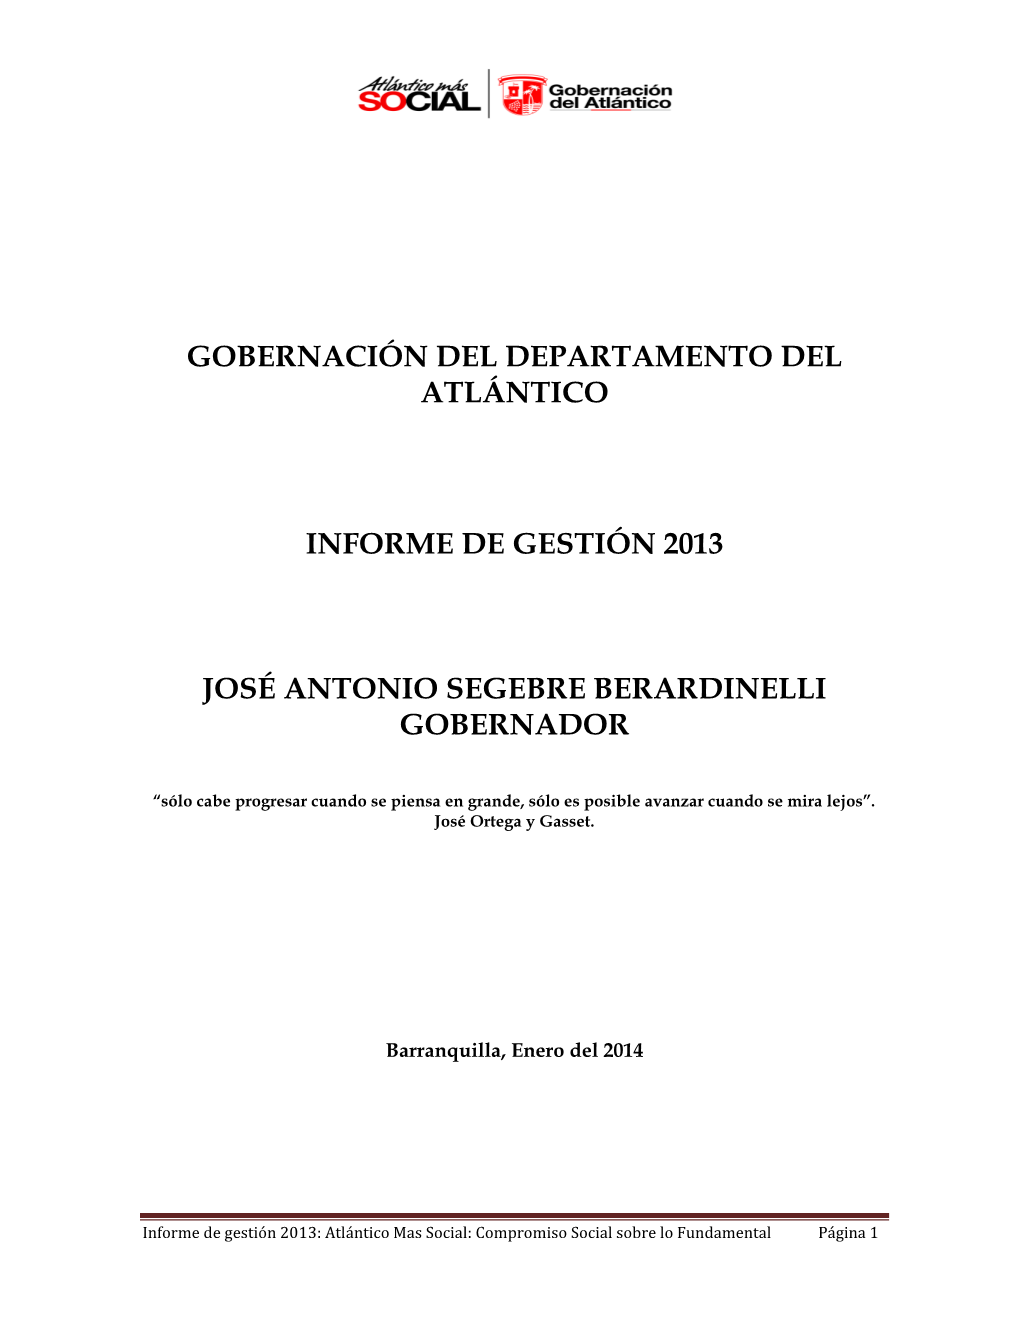 Consultar Informe De Gestión 2013